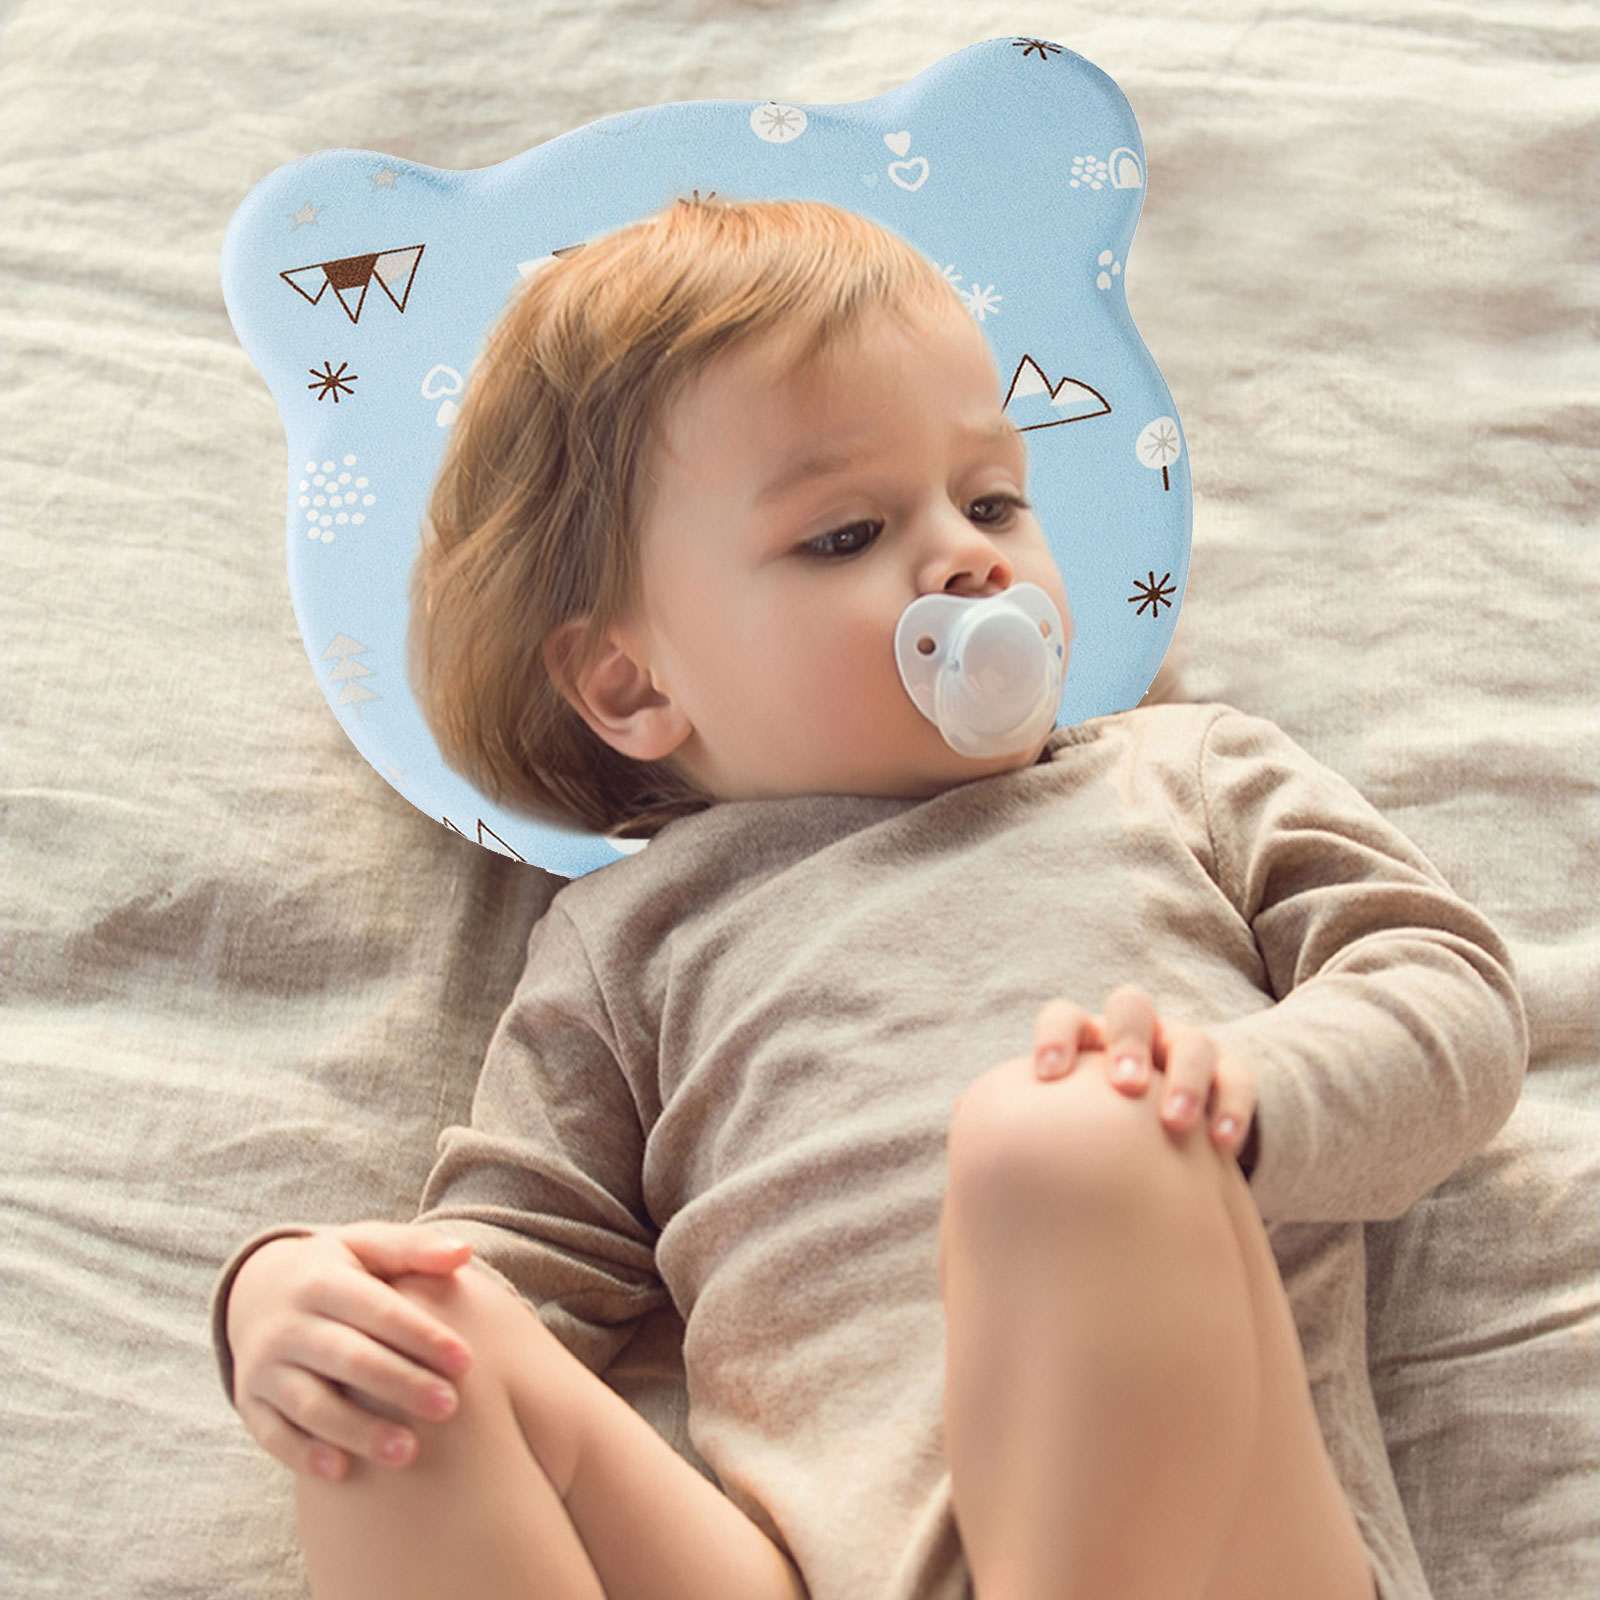 [Katte] หมอนทารก0-1ปีพนักพิงศีรษะทารกหน่วยความจำโฟมหมอนทารกไส้เทียนหมอนระบายอากาศ